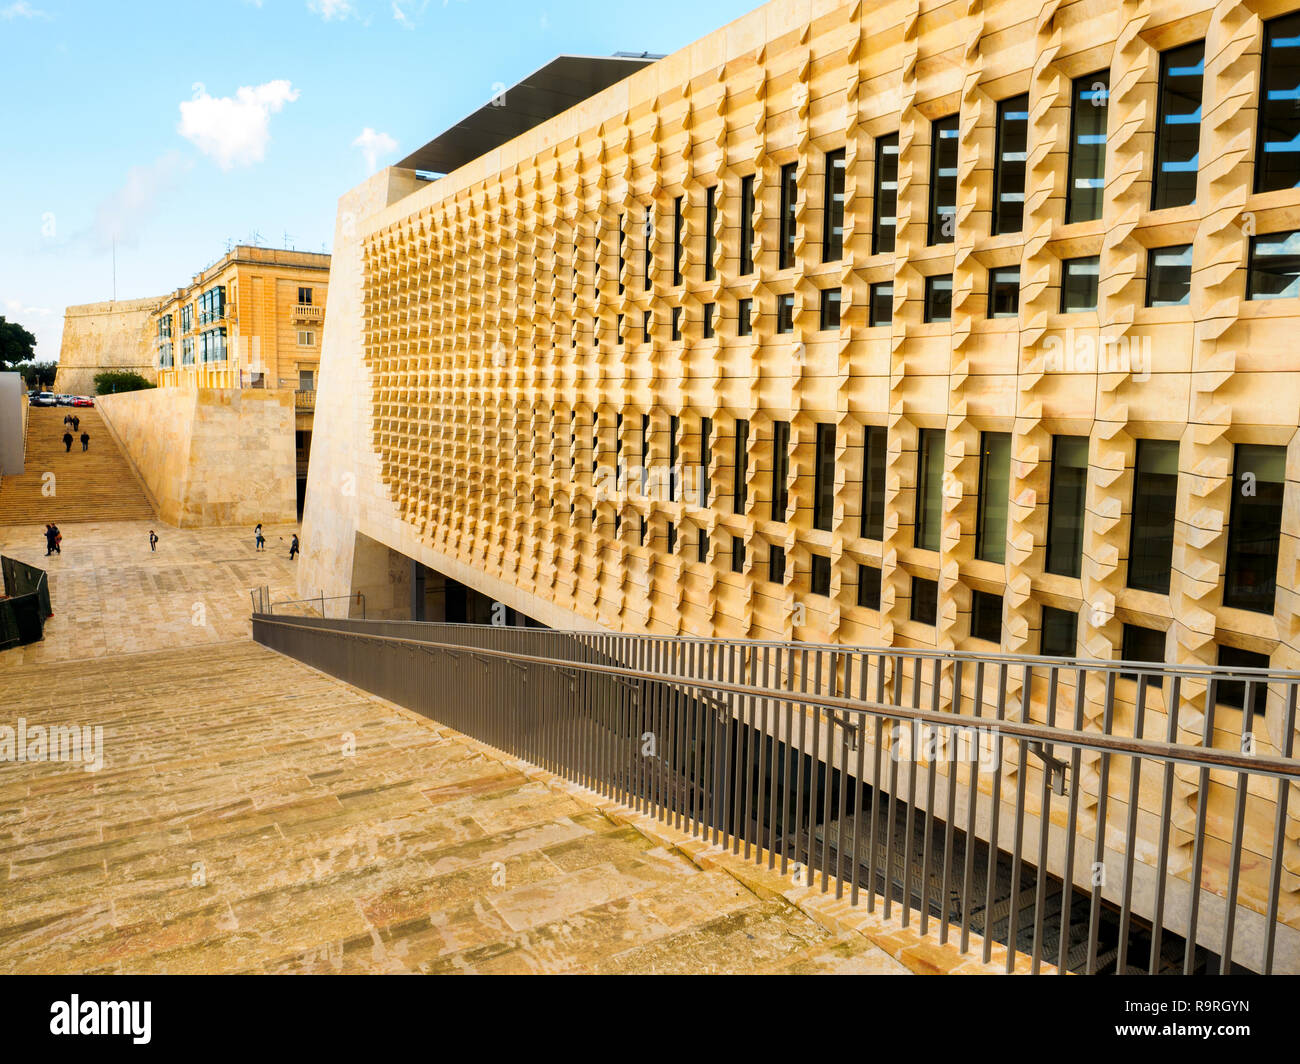 The new government building - Valletta, Malta Stock Photo